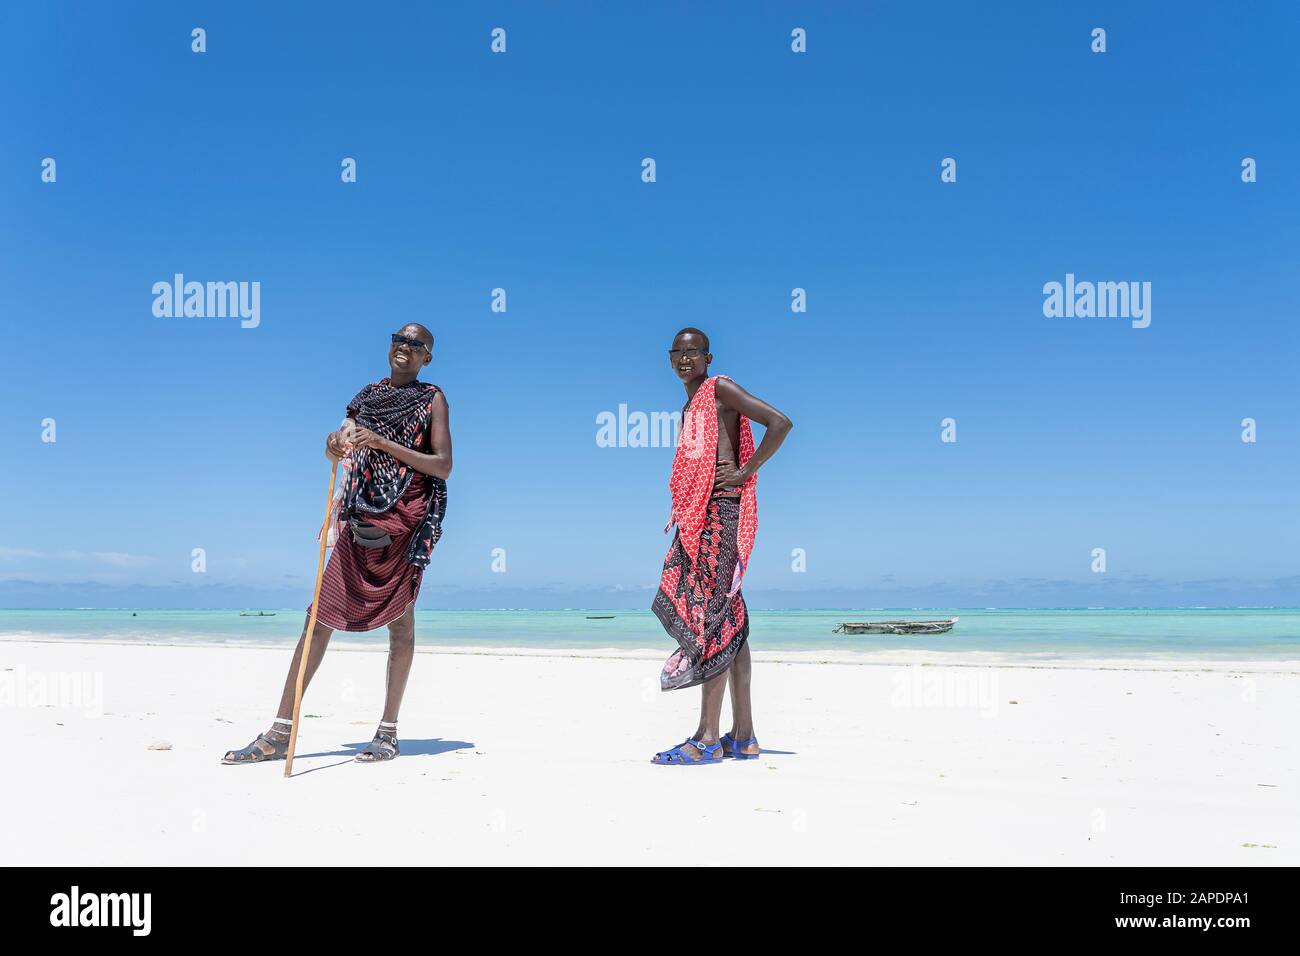 Arturo carga Una herramienta central que juega un papel importante. Zanzíbar, Tanzania - 28 de octubre de 2019 : Dos hombres africanos masai  vestidos con ropa tradicional cerca del océano en la playa de arena,  Zanzíbar, Tanz Fotografía de stock - Alamy